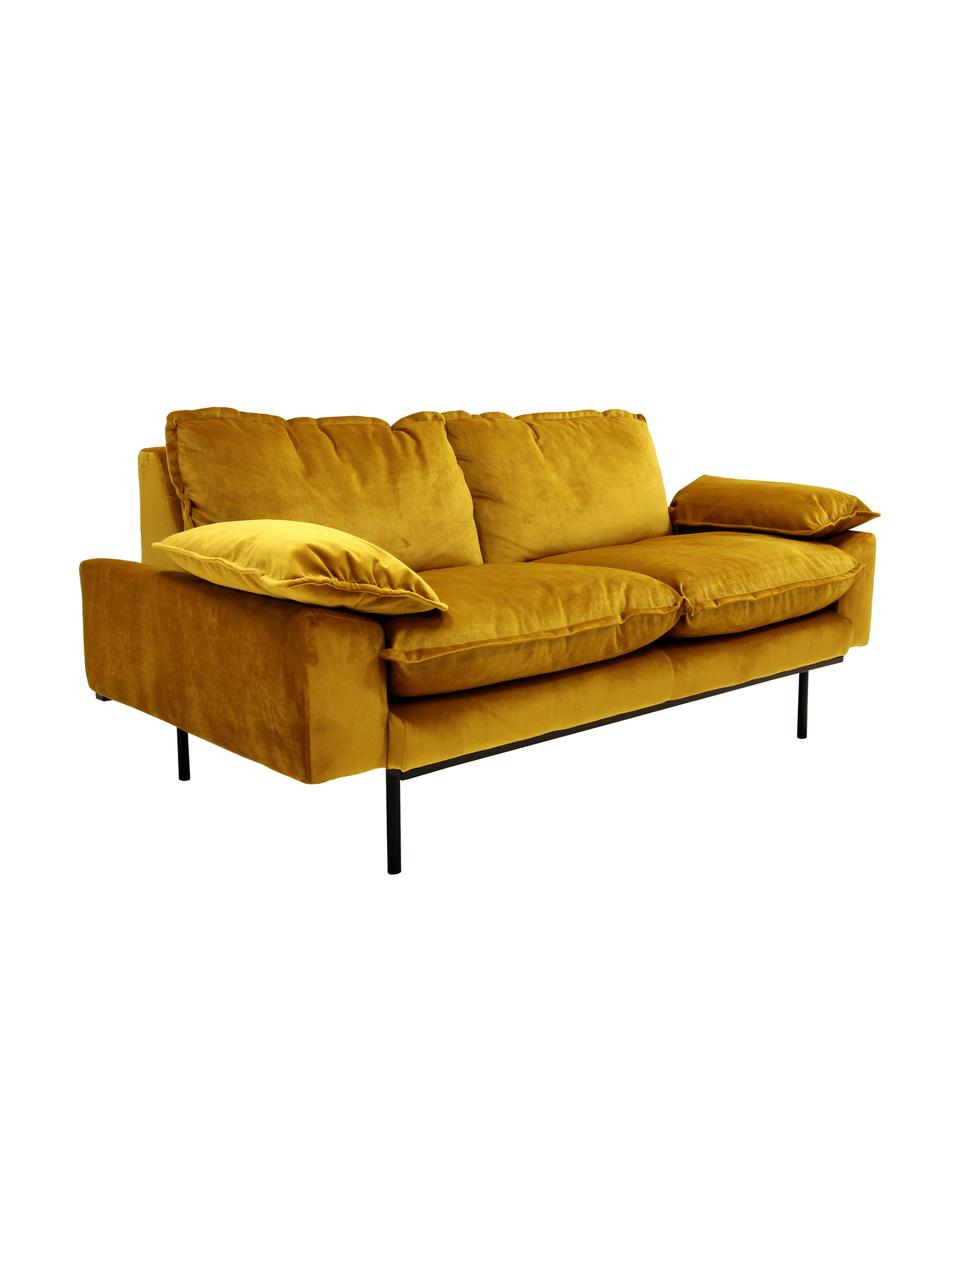 Samt-Sofa Retro (2-Sitzer) in Gelb mit Metall-Füssen, Bezug: Polyestersamt 86.000 Sche, Korpus: Mitteldichte Holzfaserpla, Samt Ockergelb, B 175 x T 83 cm